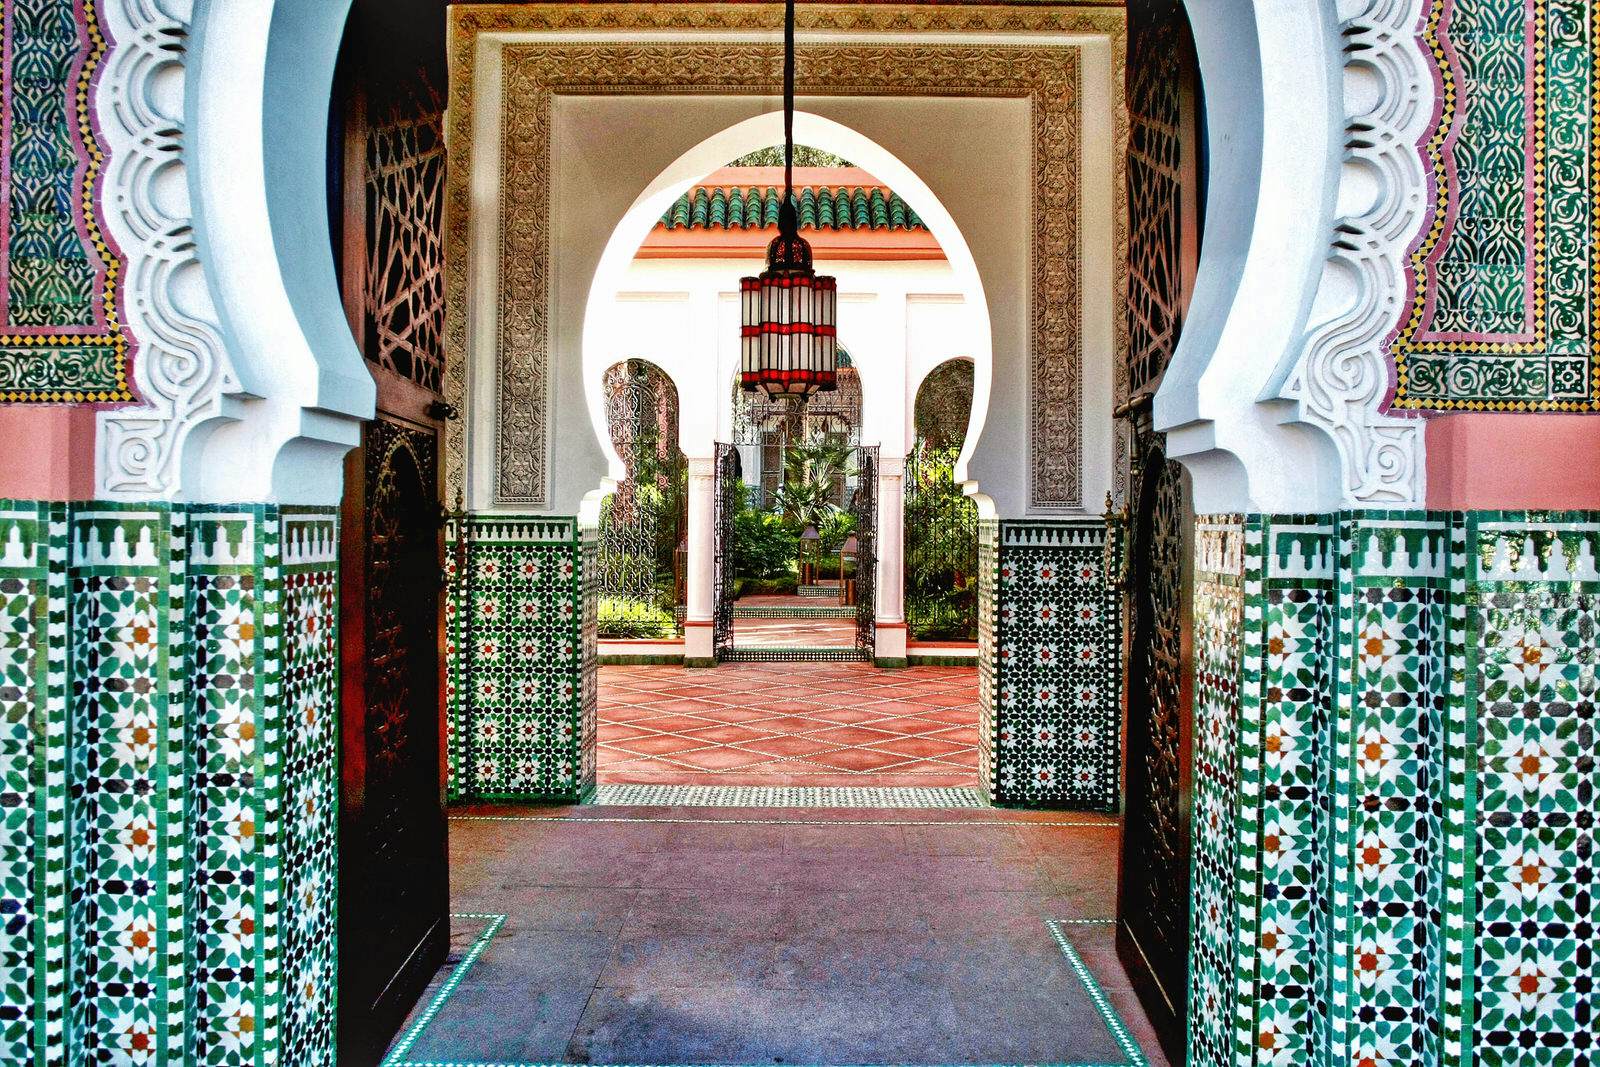 Hammam là một trải nghiệm thuộc loại sang trọng và độc đáo nhất tại Marrakesh. Hãy xem hình ảnh liên quan để tìm hiểu cách thức hammam hoạt động và những mẹo, thủ thuật để có được trải nghiệm tốt nhất tại spa này.